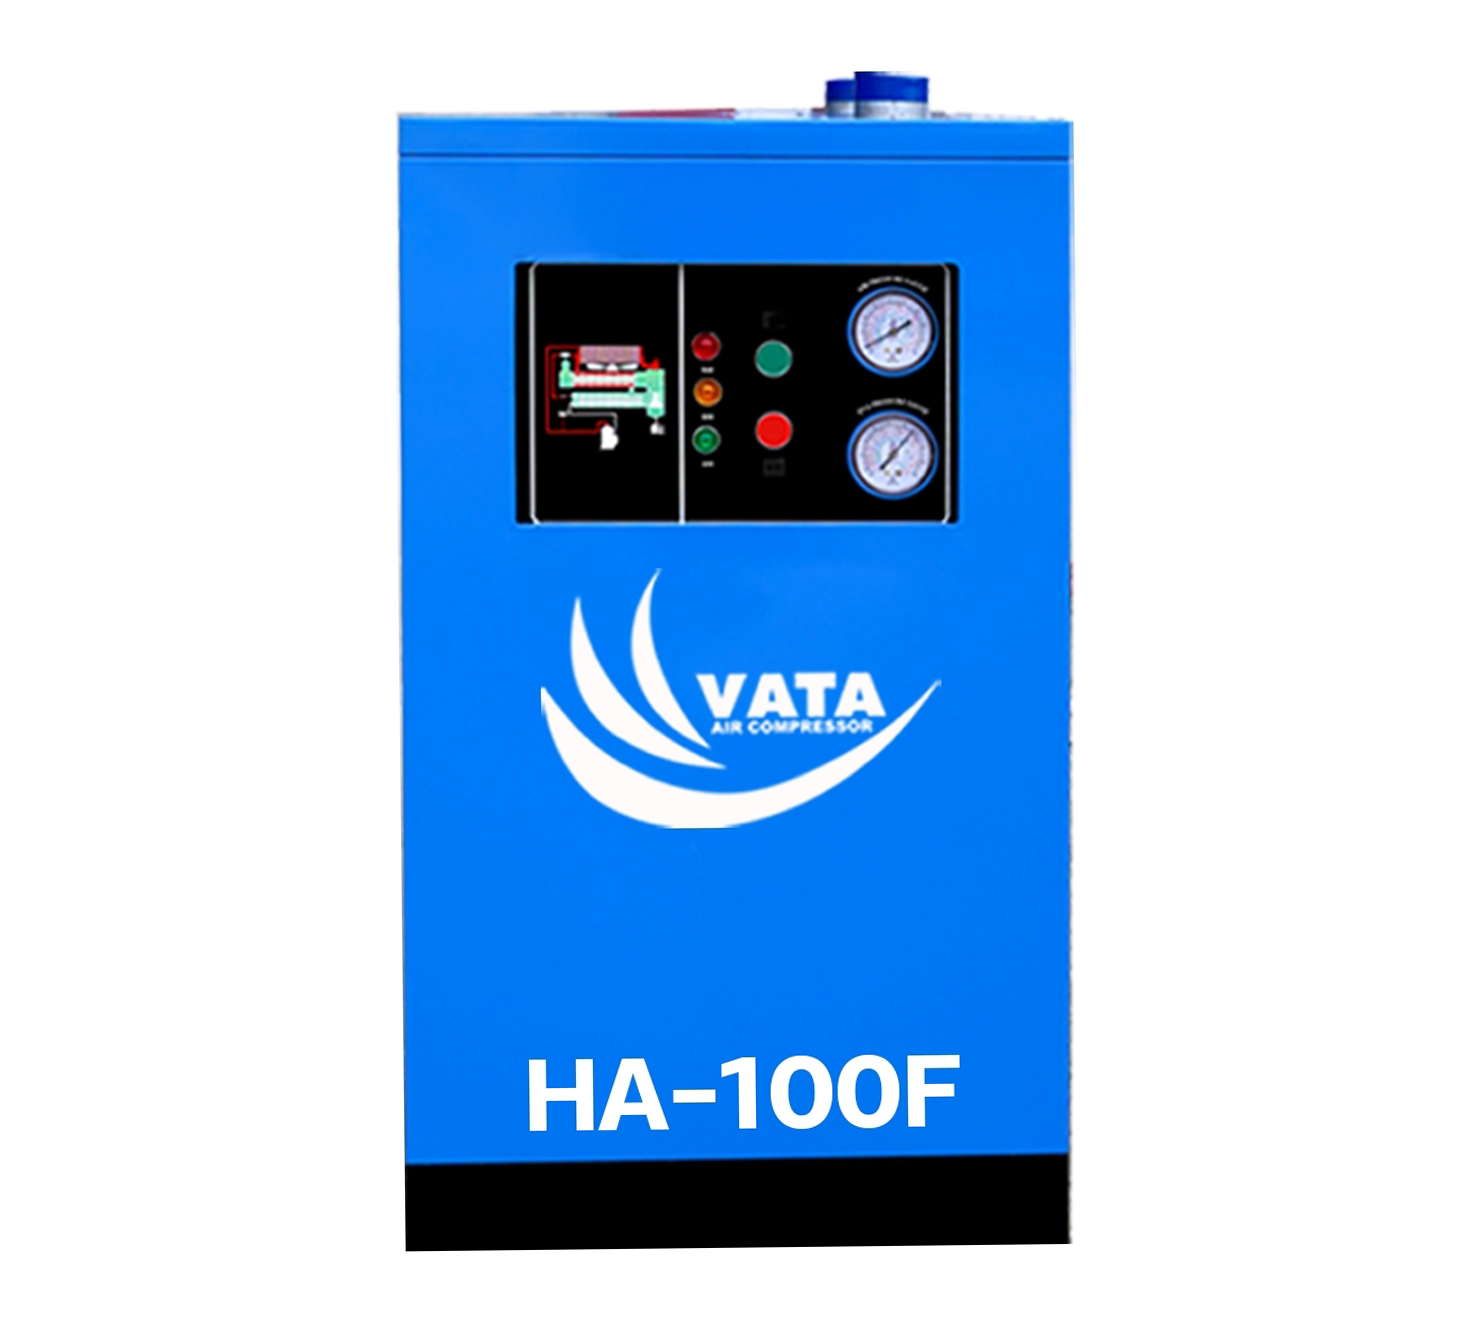 เครื่องทำลมแห้ง Refrigerated Air Dryer แบรนด์ VATA รุ่น HA-100F ขนาด 3 kw. ไฟฟ้า 380V รับประกันสินค้า 1 ปี ตามเงื่อนไขของบริษัทฯ